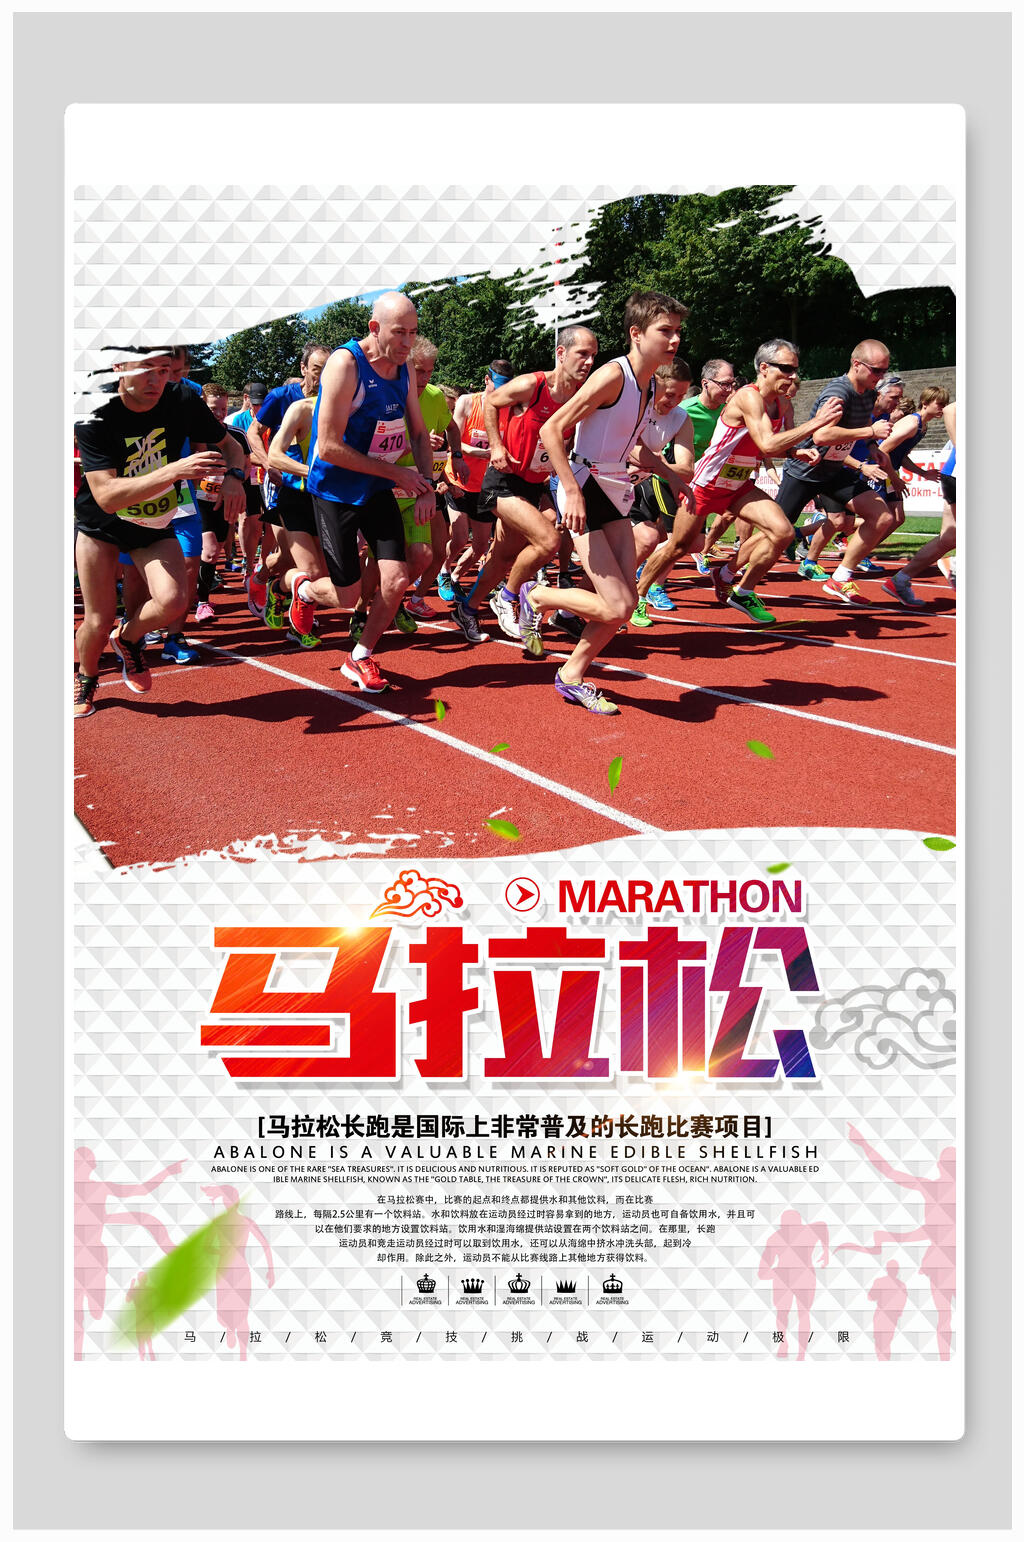 下载马拉松比赛体育运动海报激情马拉松海报展板简约马拉松海报设计